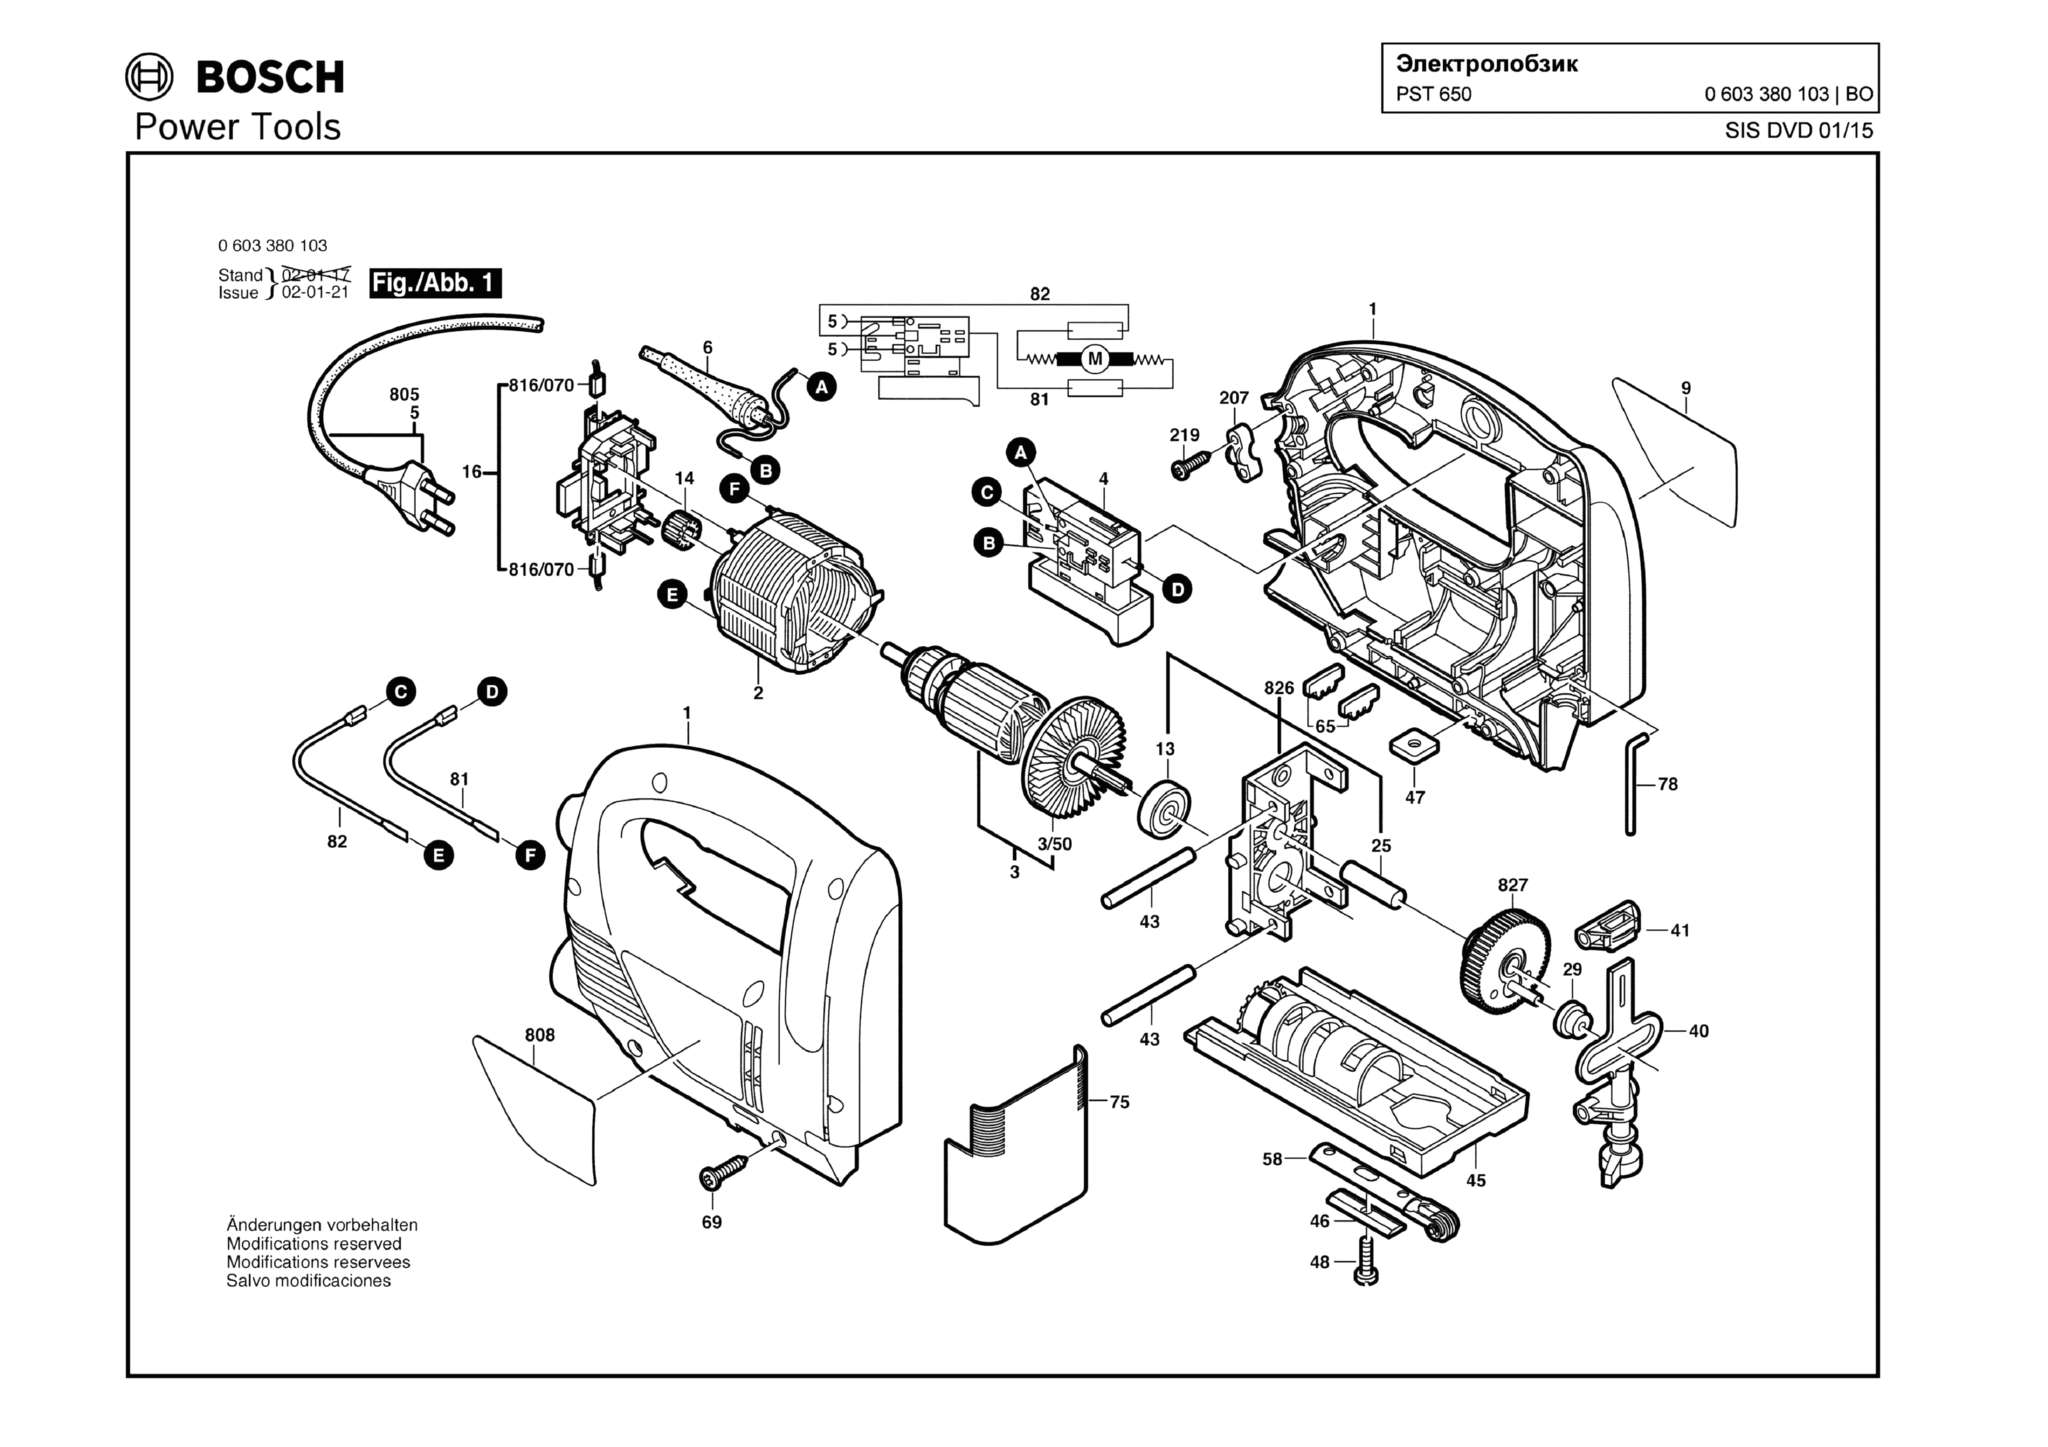 Запчасти, схема и деталировка Bosch PST 650 (ТИП 0603380103)